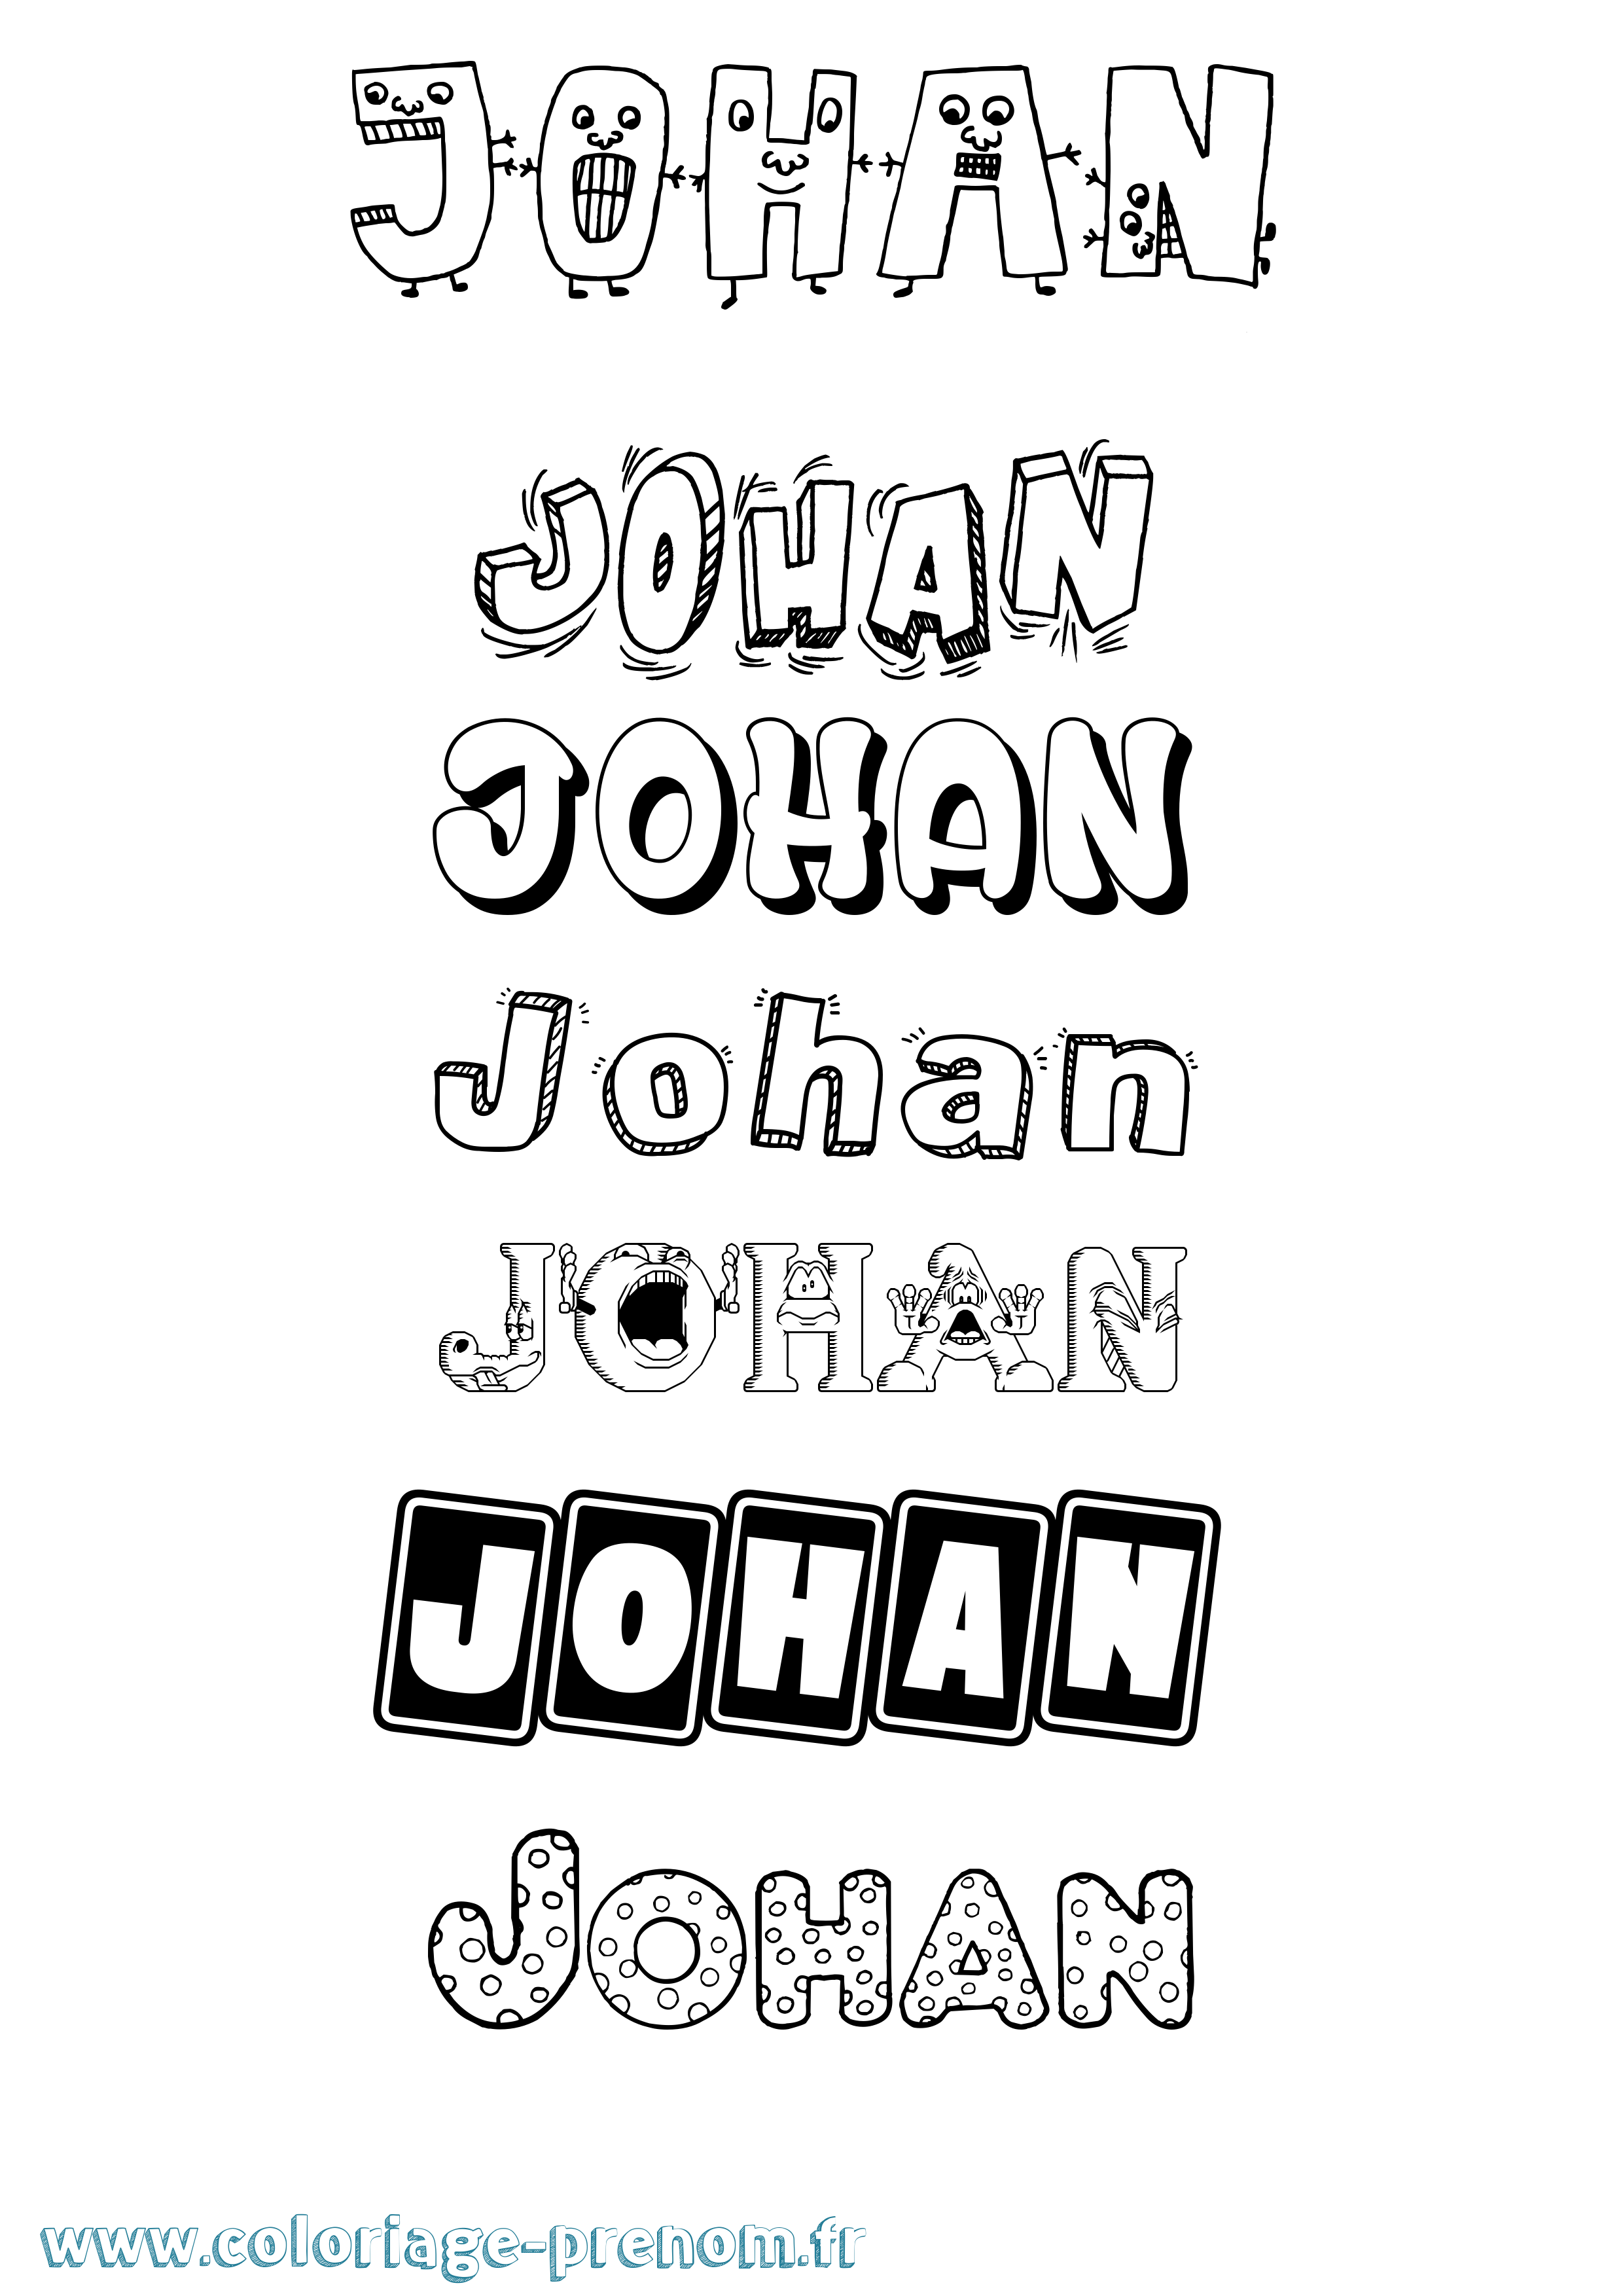 Coloriage prénom Johan Fun